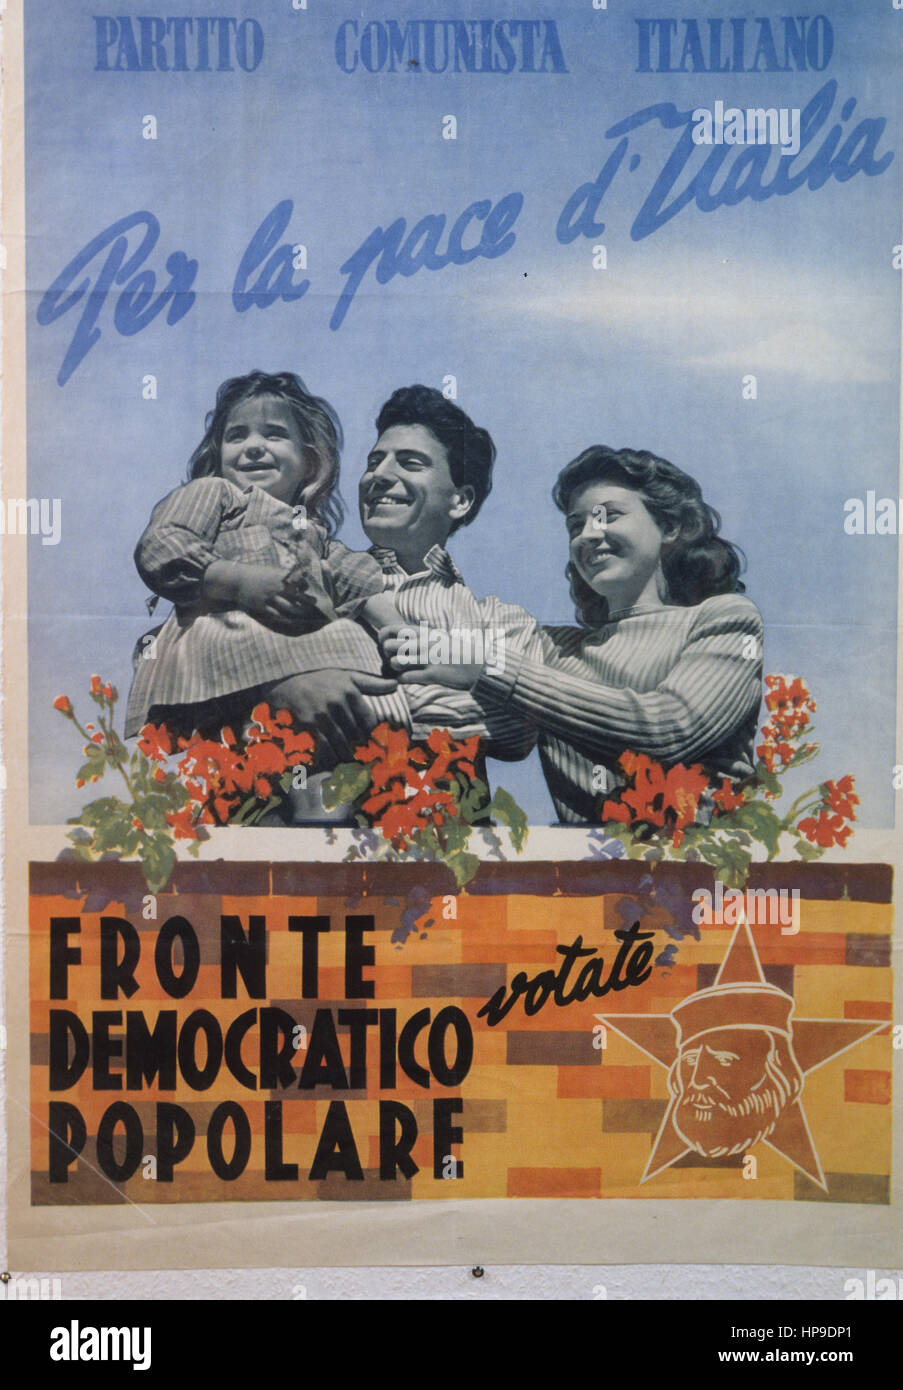 Partito comunista italiano,per la pace dell'Italia,nominale democratica popolare anteriore,1948 Foto Stock